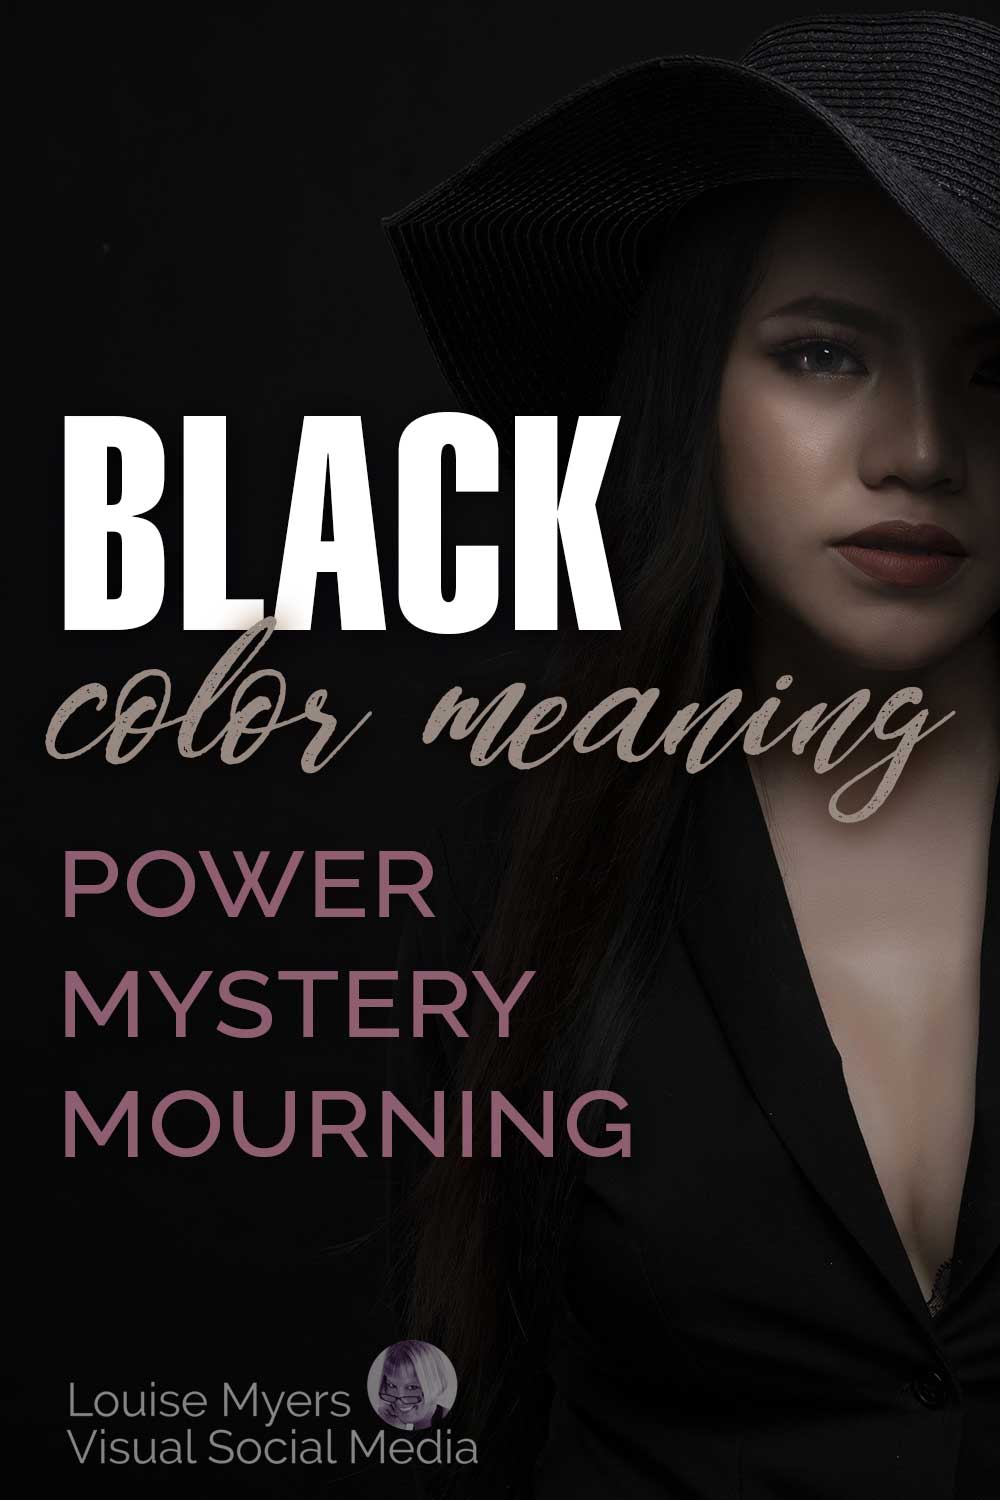 schattierte und mysteriöse Frau in Schwarz vor schwarzem Hintergrund mit Text, schwarze Farbbedeutung, Power-Mysterium-Trauer.